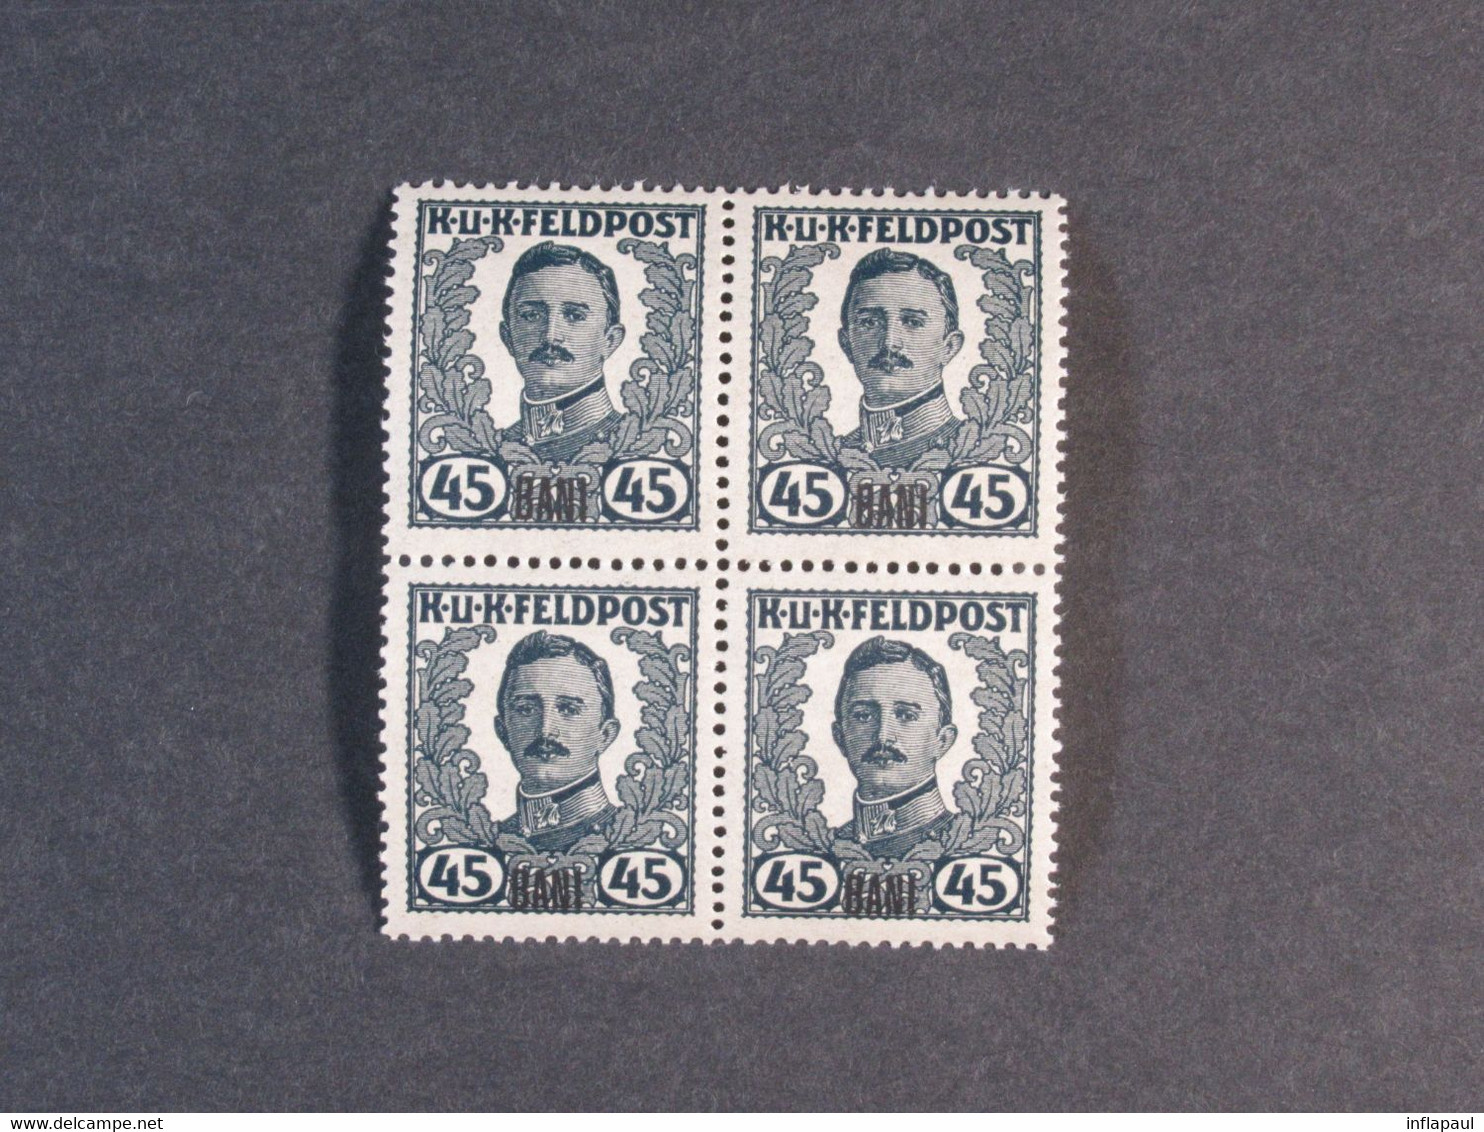 Unverausgabte Österreichisch - Ungarische  Feldpostmarken ** für Rumänien in  Viererblöcken,Teilserie 6800,00 €